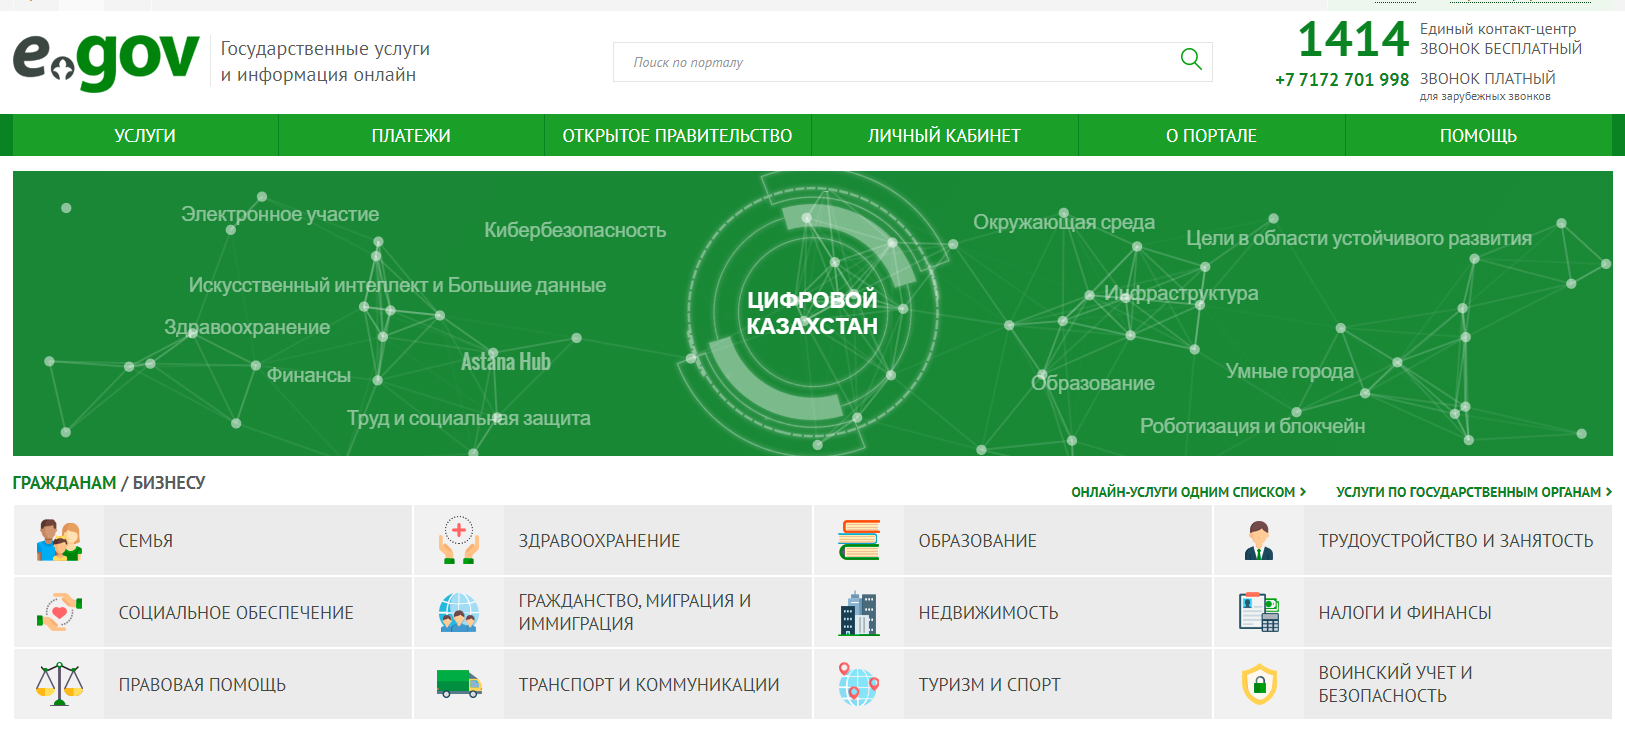 Налоги ИП 2020 в Казахстане - как оплатить налоги онлайн через Kaspi и Egov